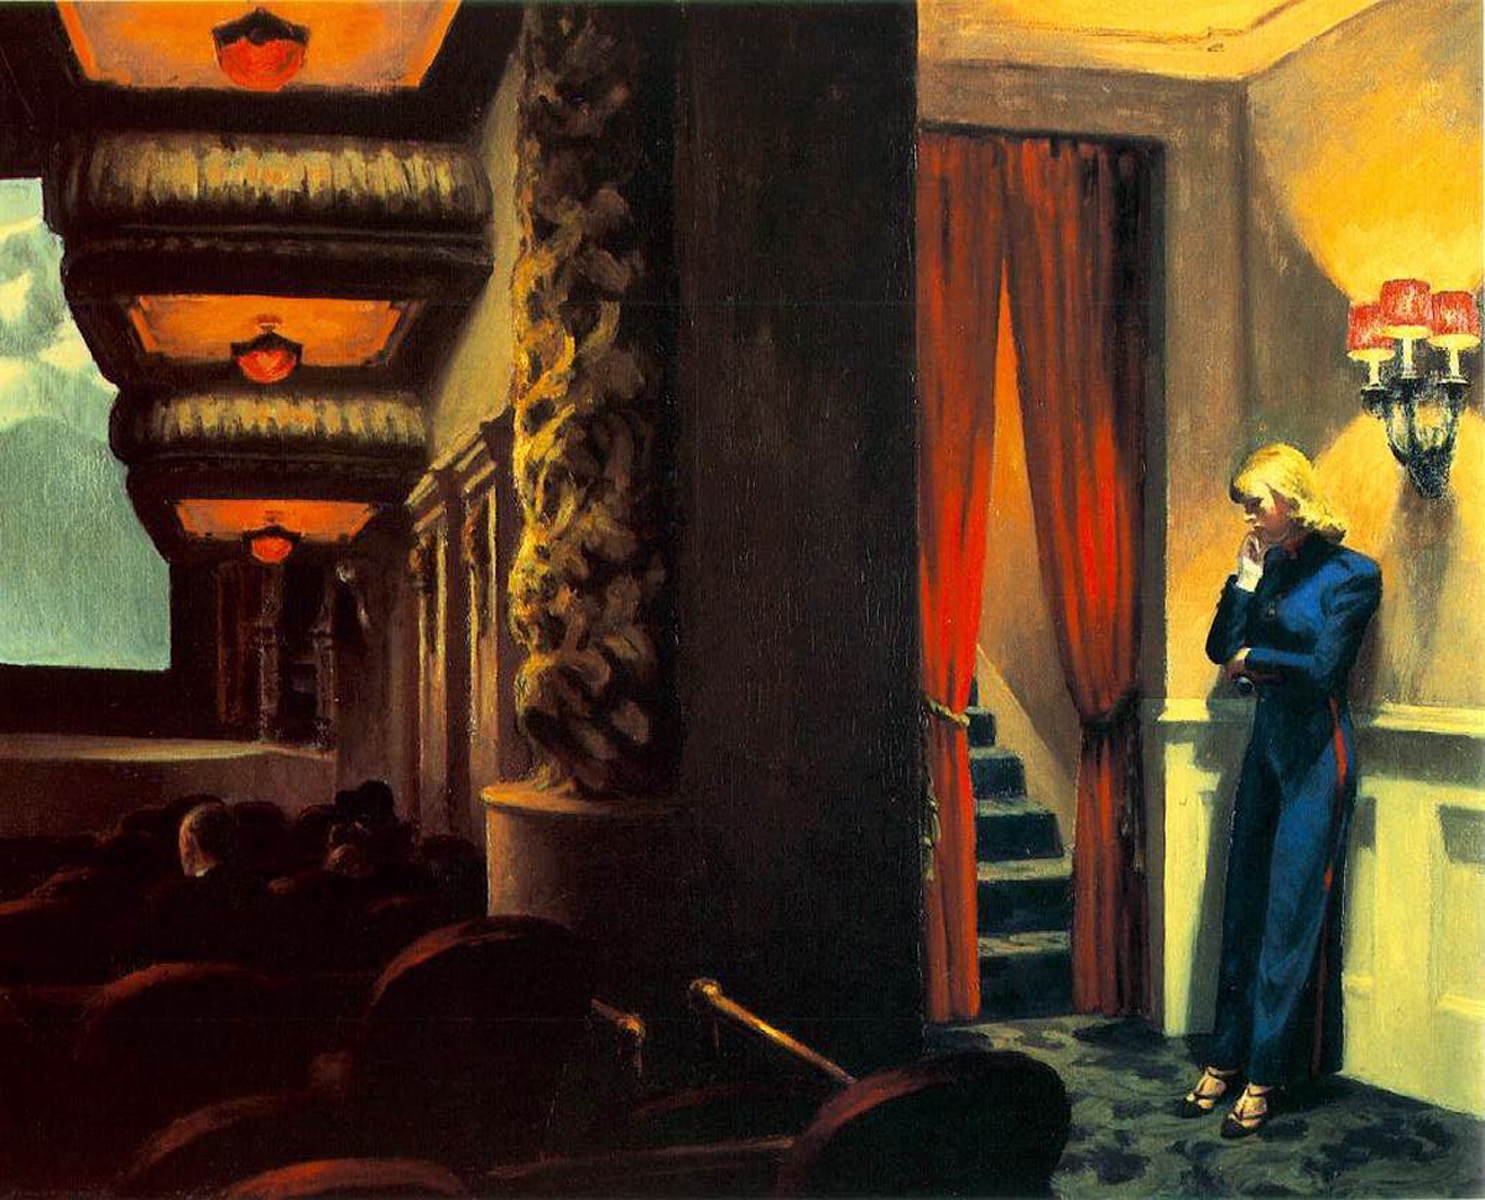 Edward Hopper. New York Movie, 1939